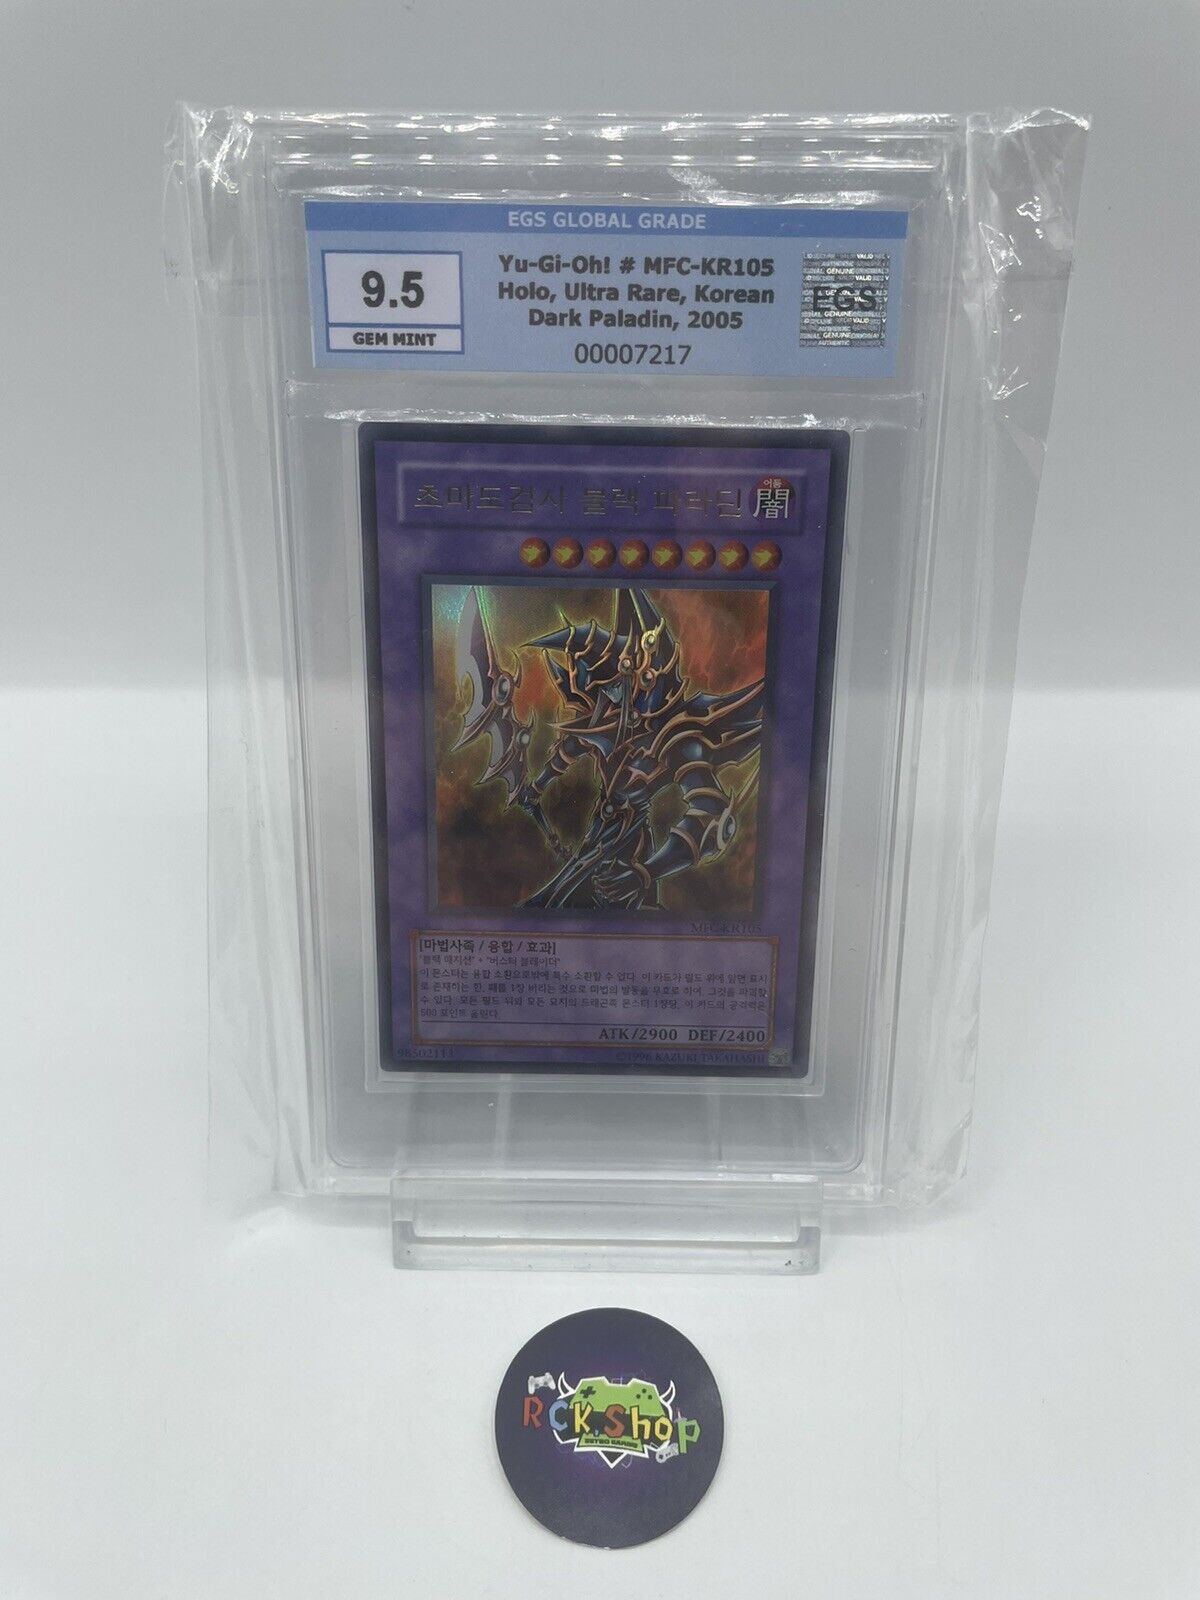 Yu-Gi-Oh Card - Dark Paladin - Holo - Ultra Rare - Korean - EGS 9.5 GEM MINT